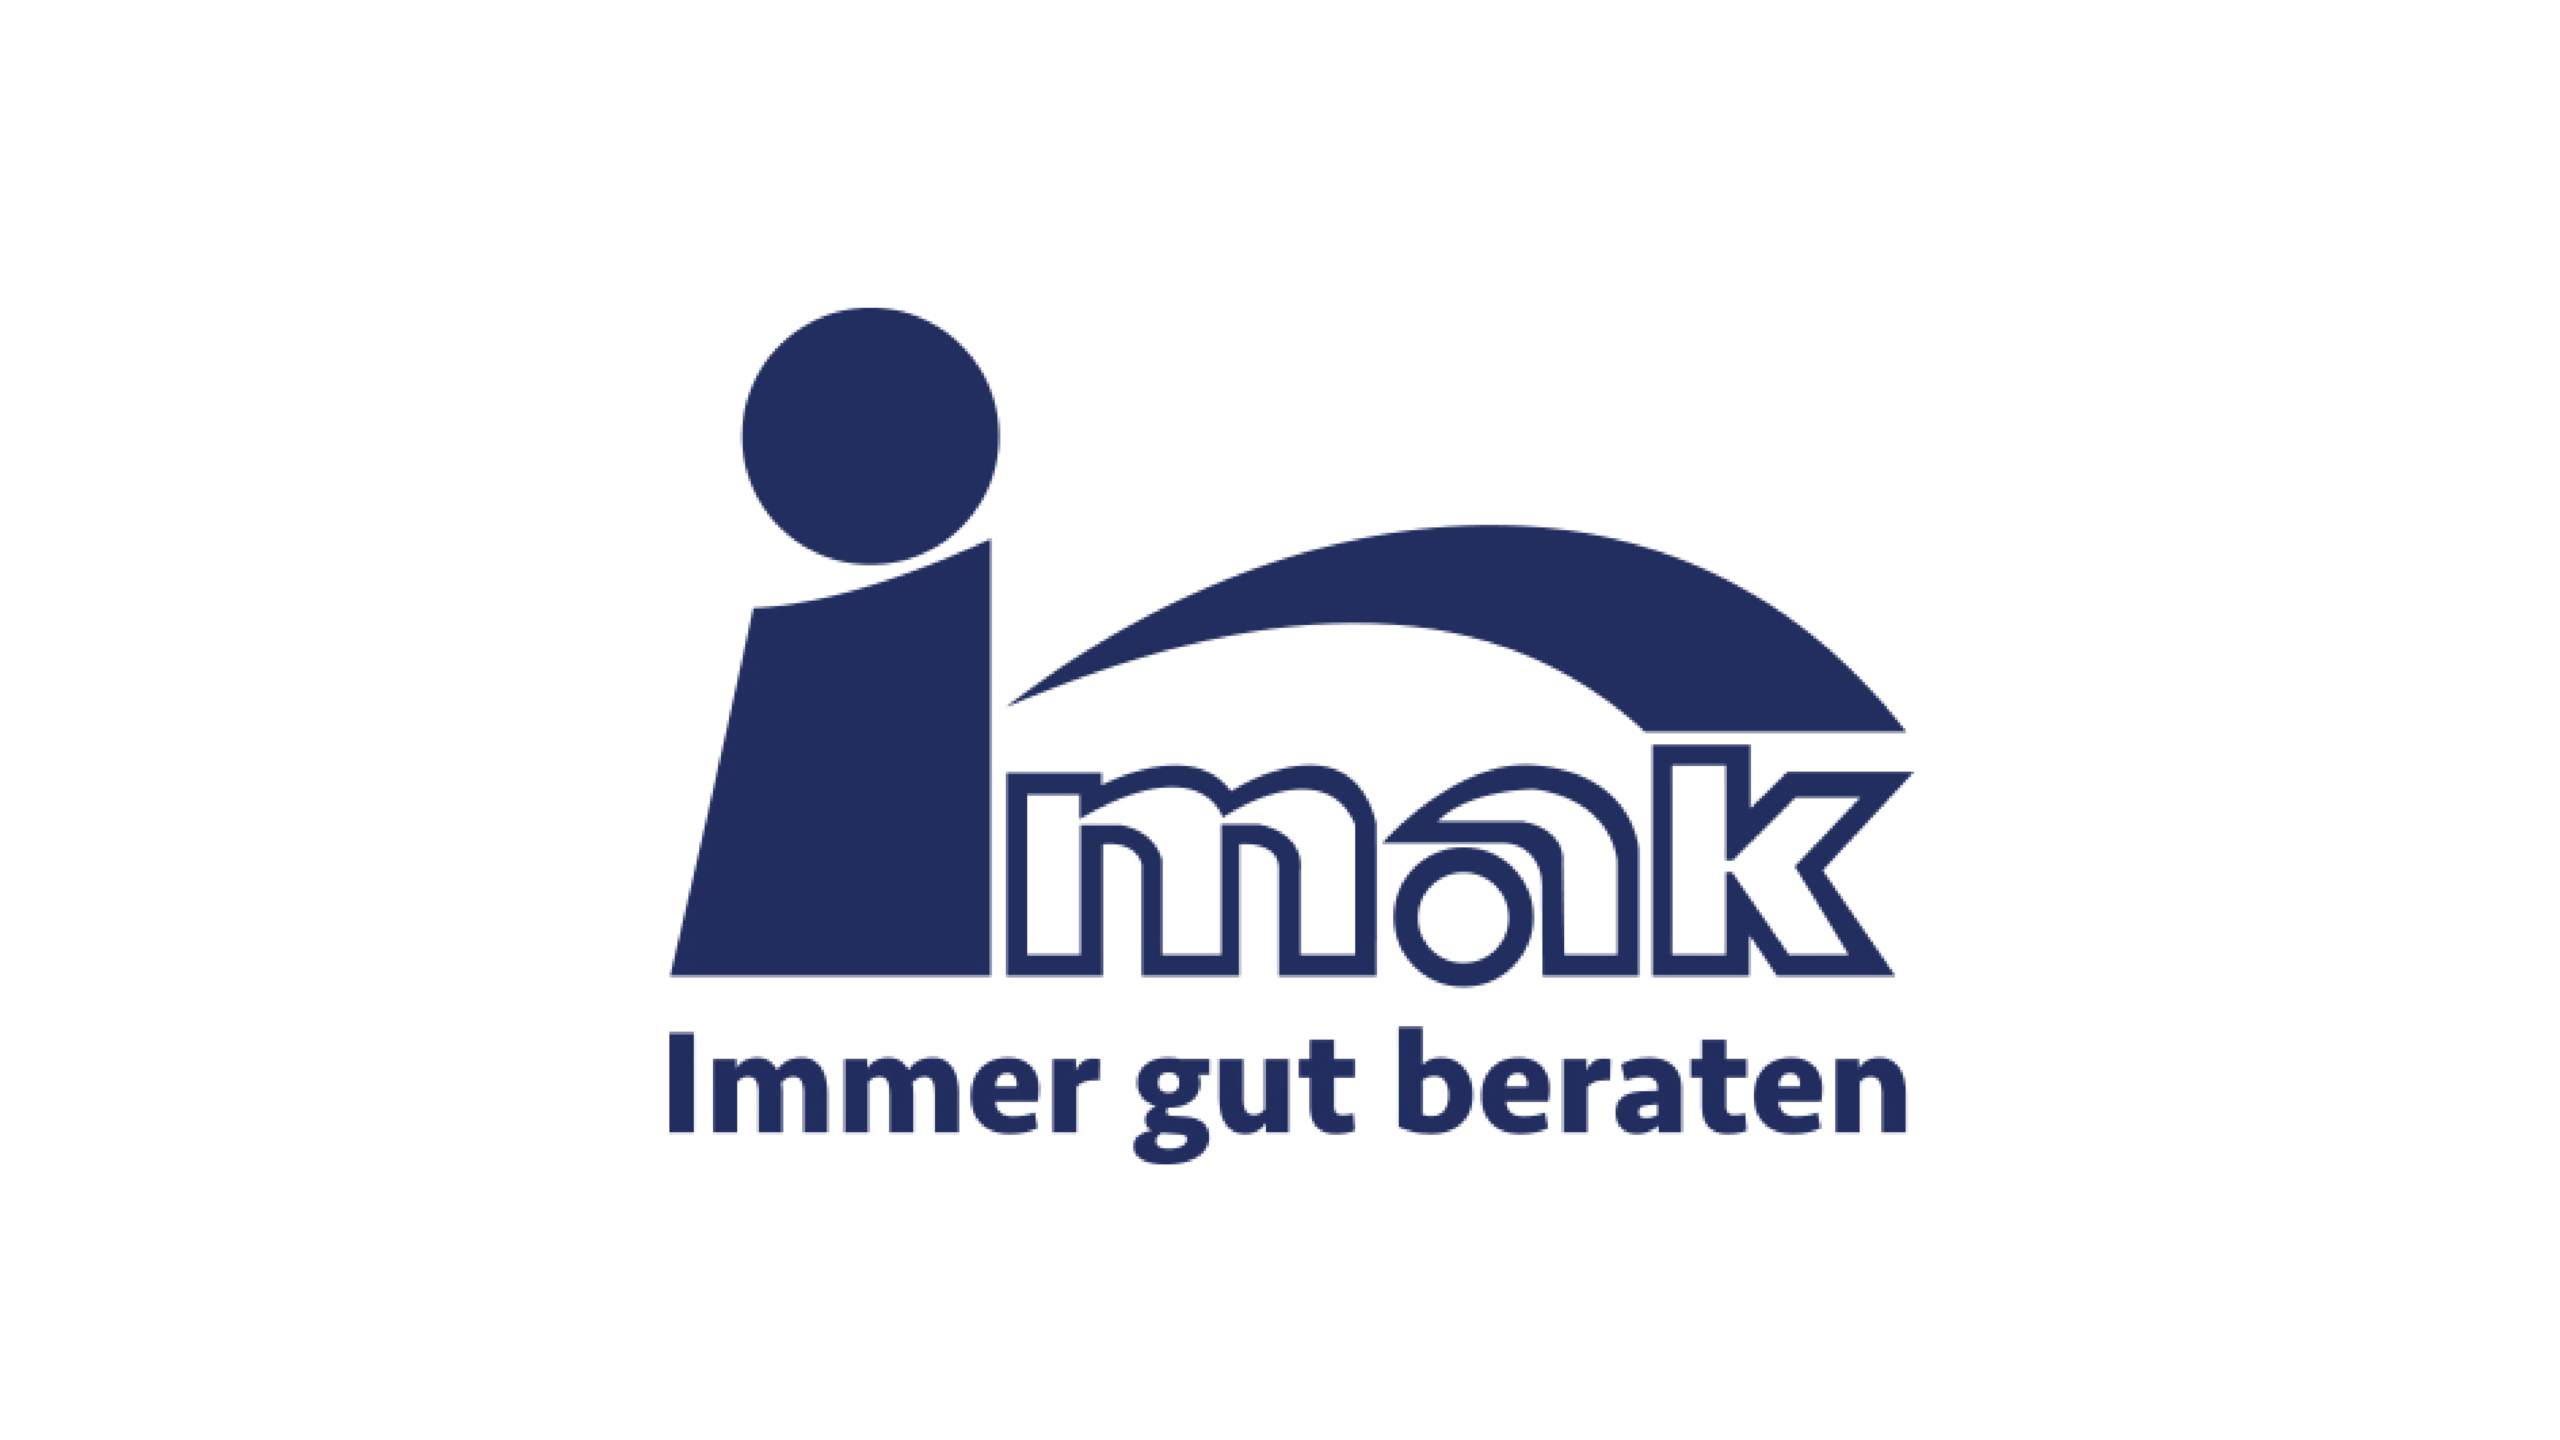 IMAK Logo Alt Zeichenflaeche 1 scaled - Grafikdesigner Wien